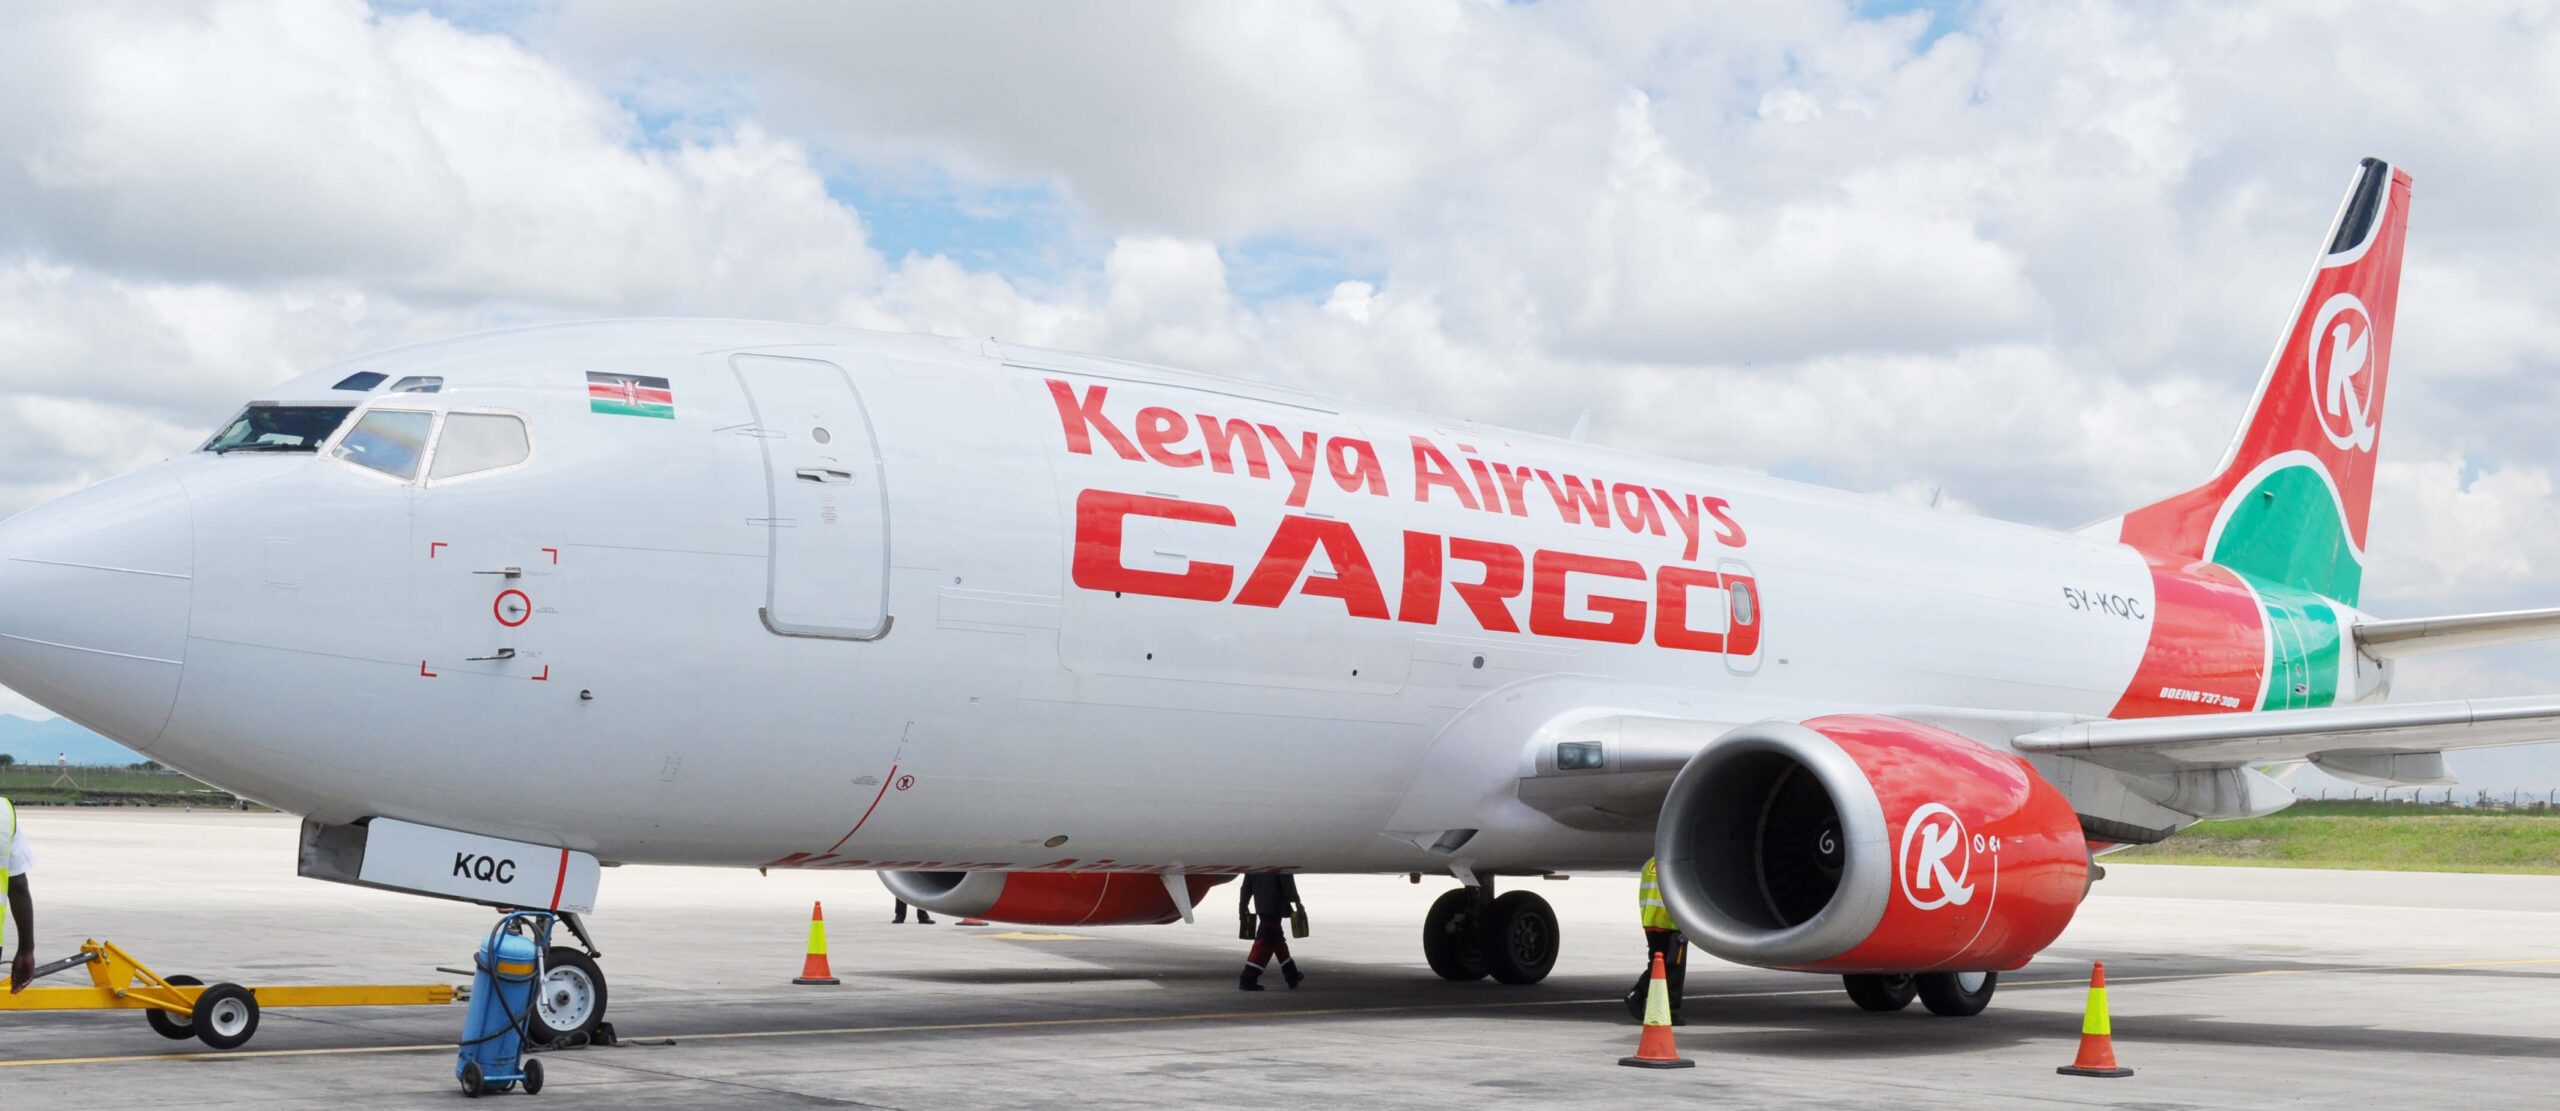 Kenya Airways Cargo 